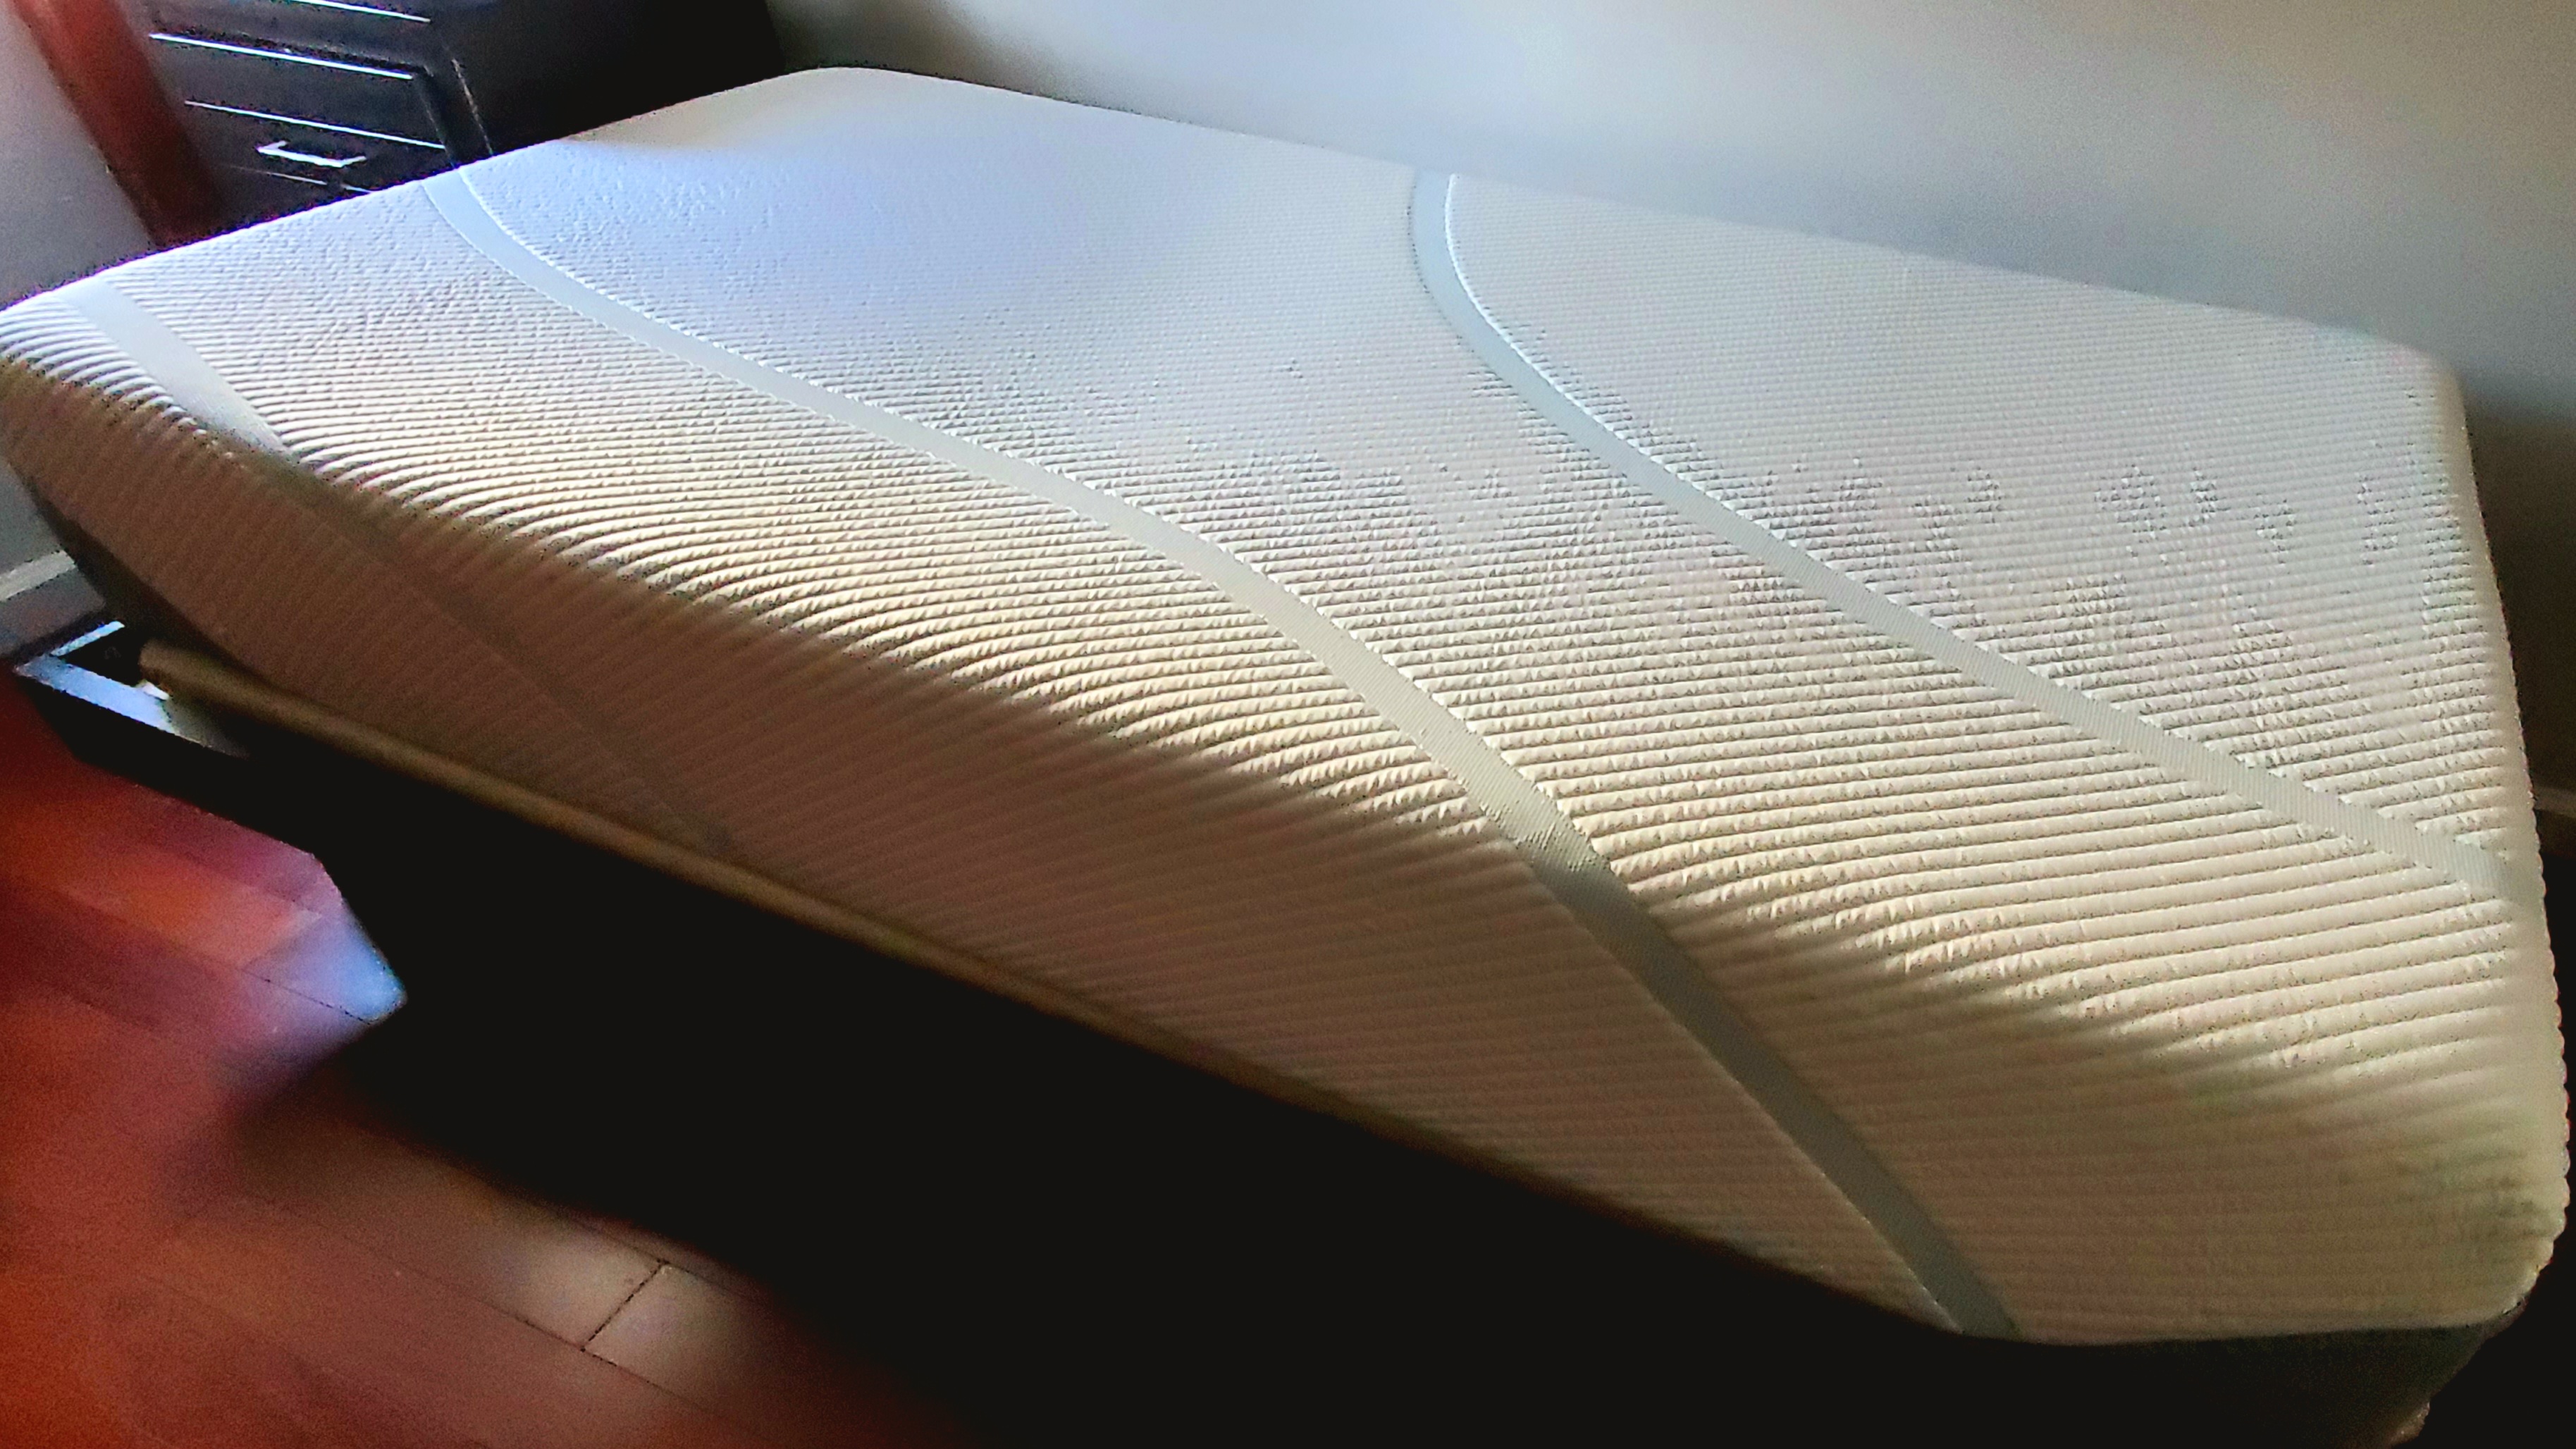 Tempur-Adapt mattress review, featuring the mattress on a platform bed right after setup